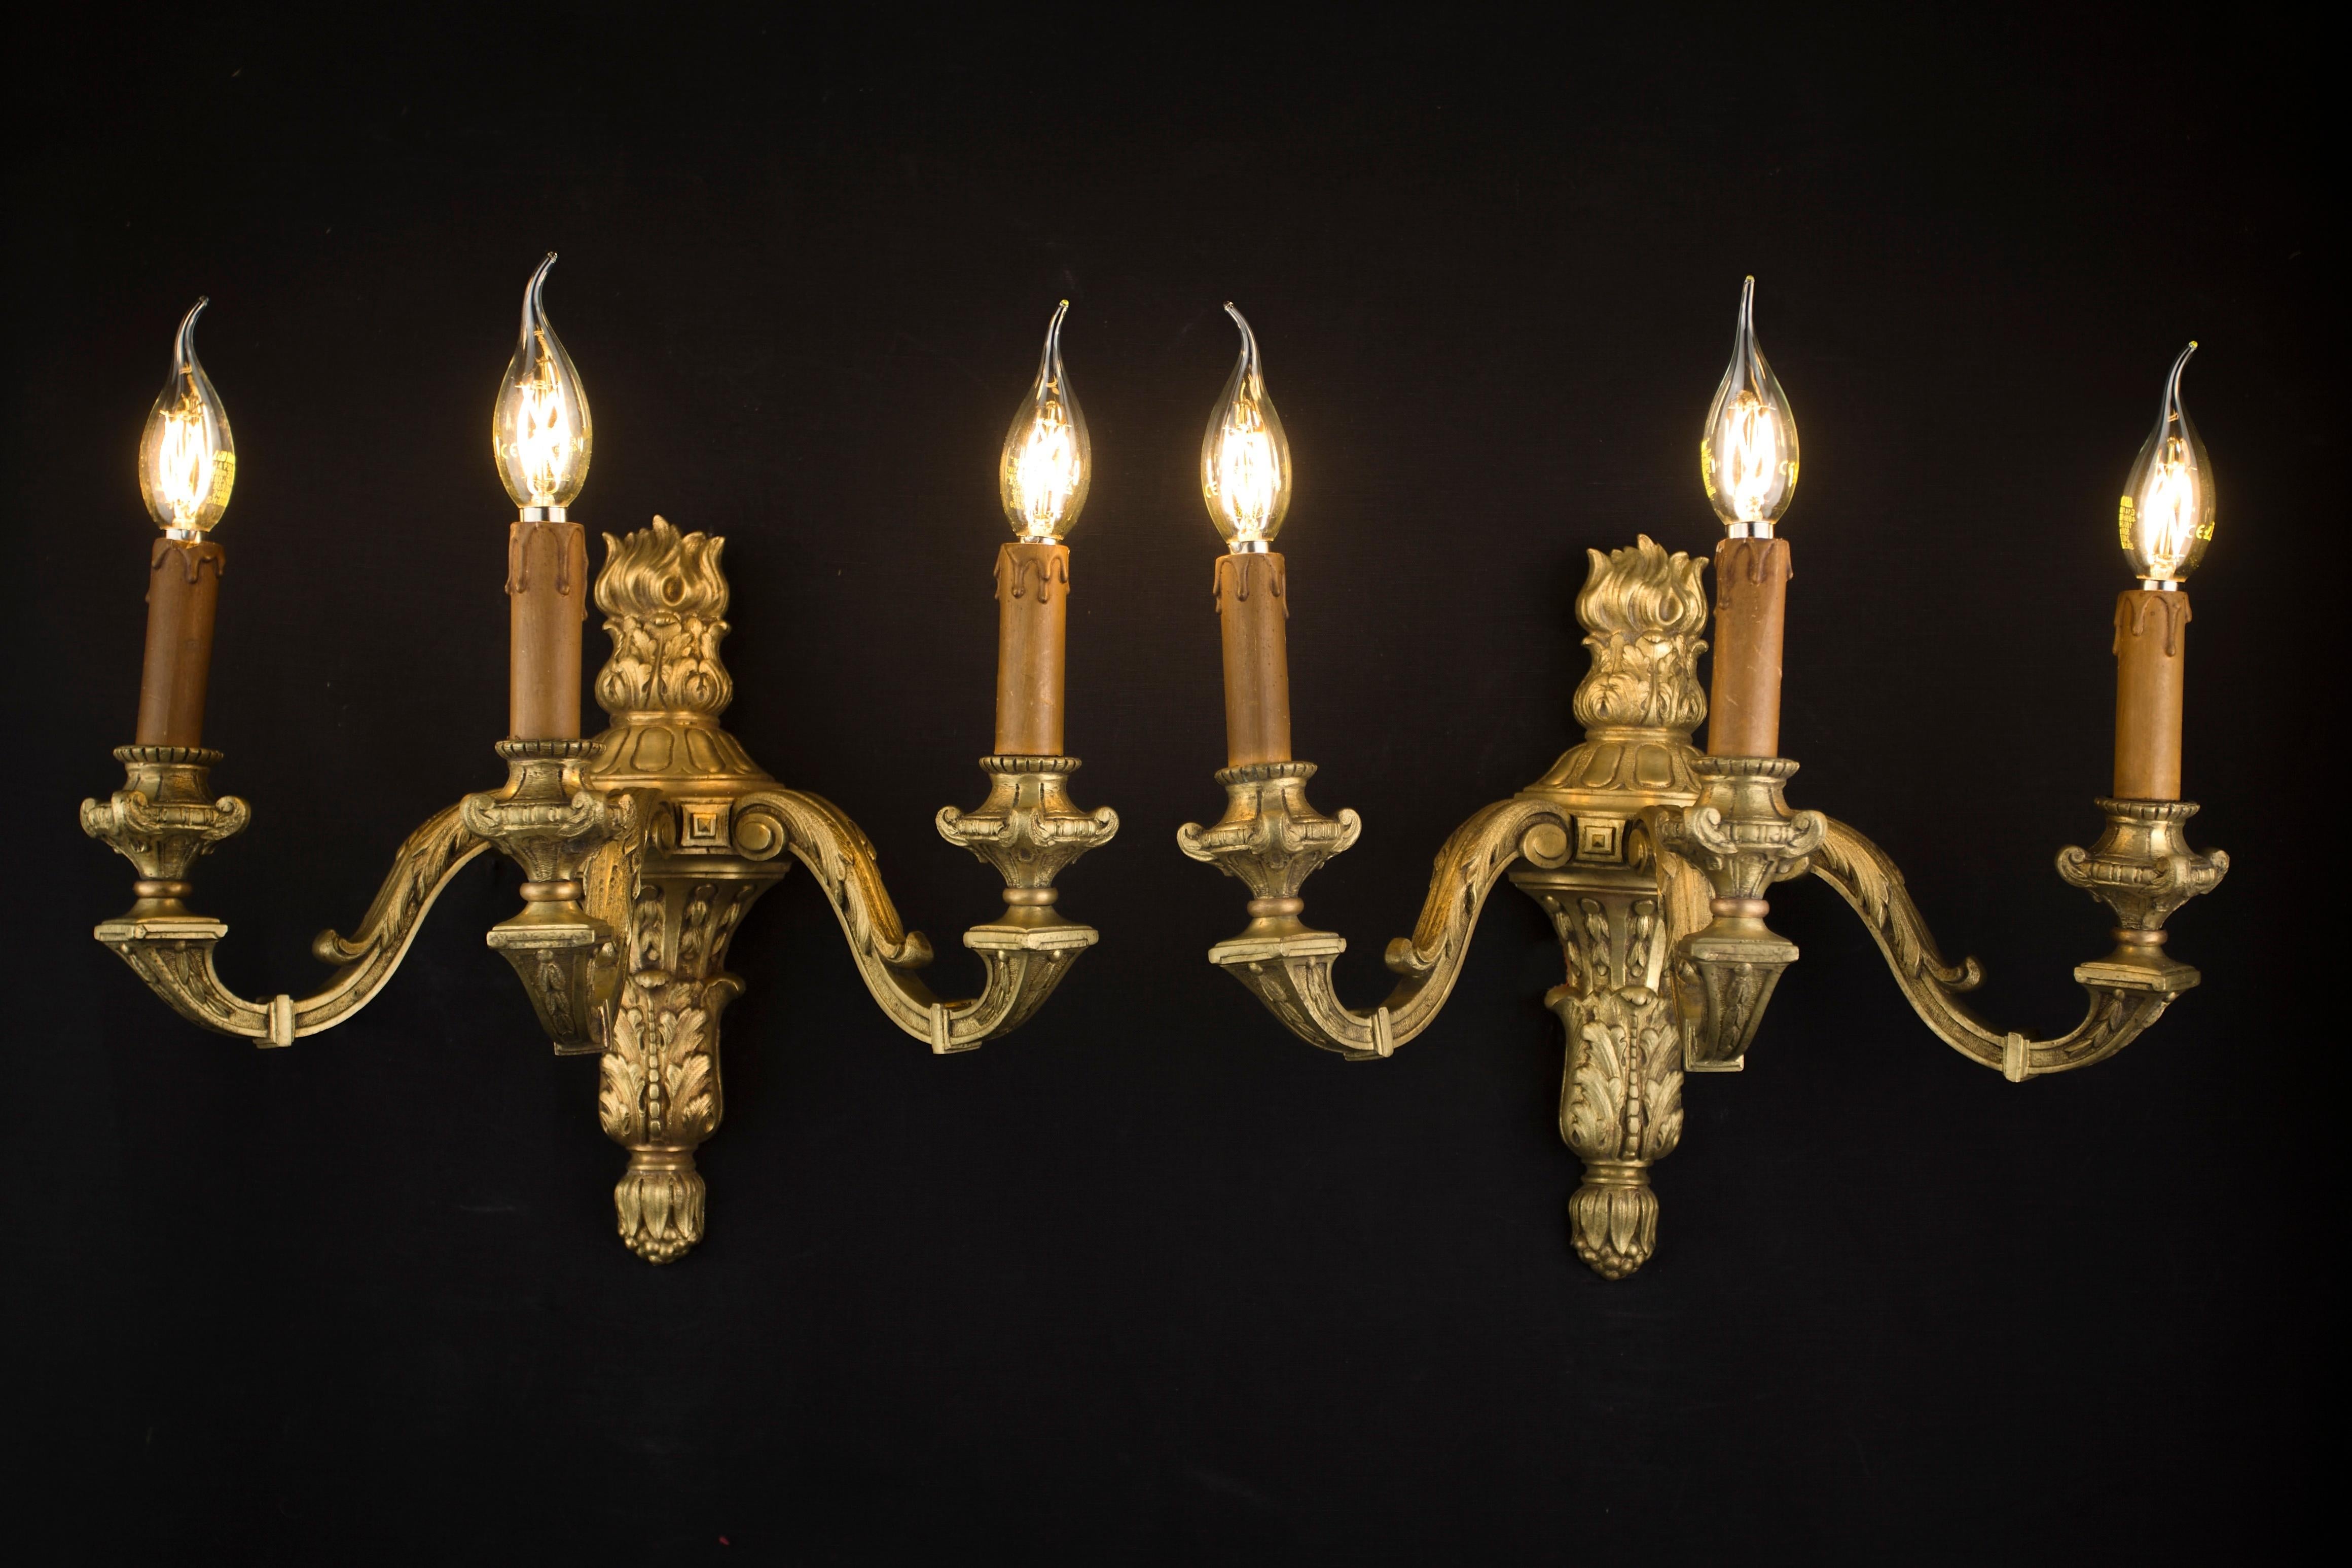 Paire d'appliques Mazarin

Appliques lourdes en laiton massif de type Mazarin. Ouvrage français du milieu du XIXe siècle. Le design luxueux et la massivité donneront à l'intérieur un niveau supérieur. Les lampes ont un nouveau câblage en cuivre. Les